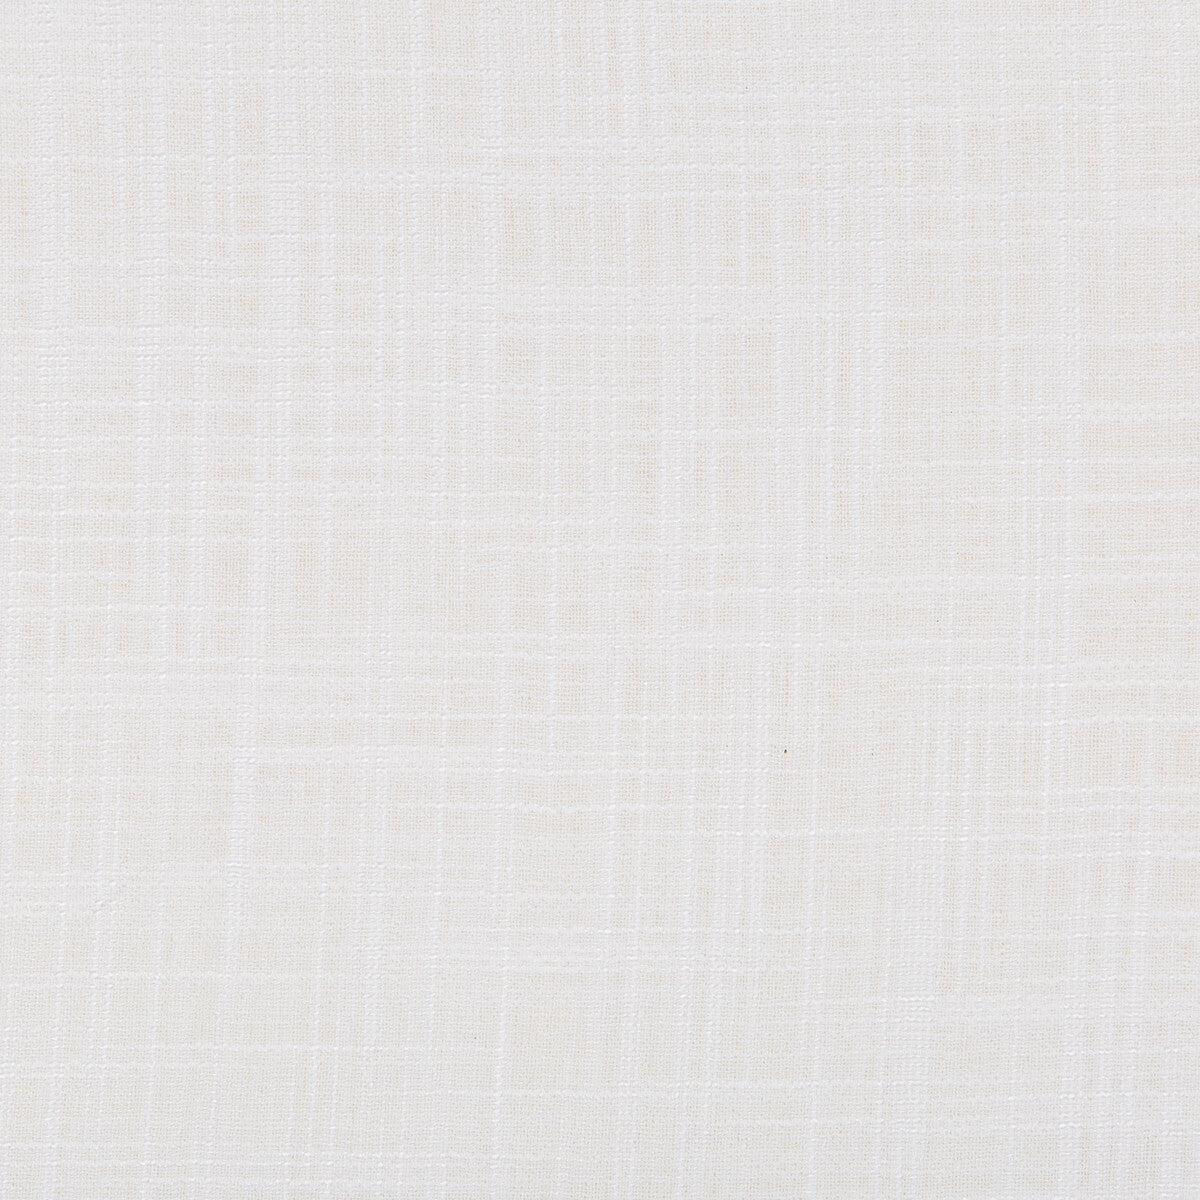 Kravet Basics fabric in 4674-101 color - pattern 4674.101.0 - by Kravet Basics